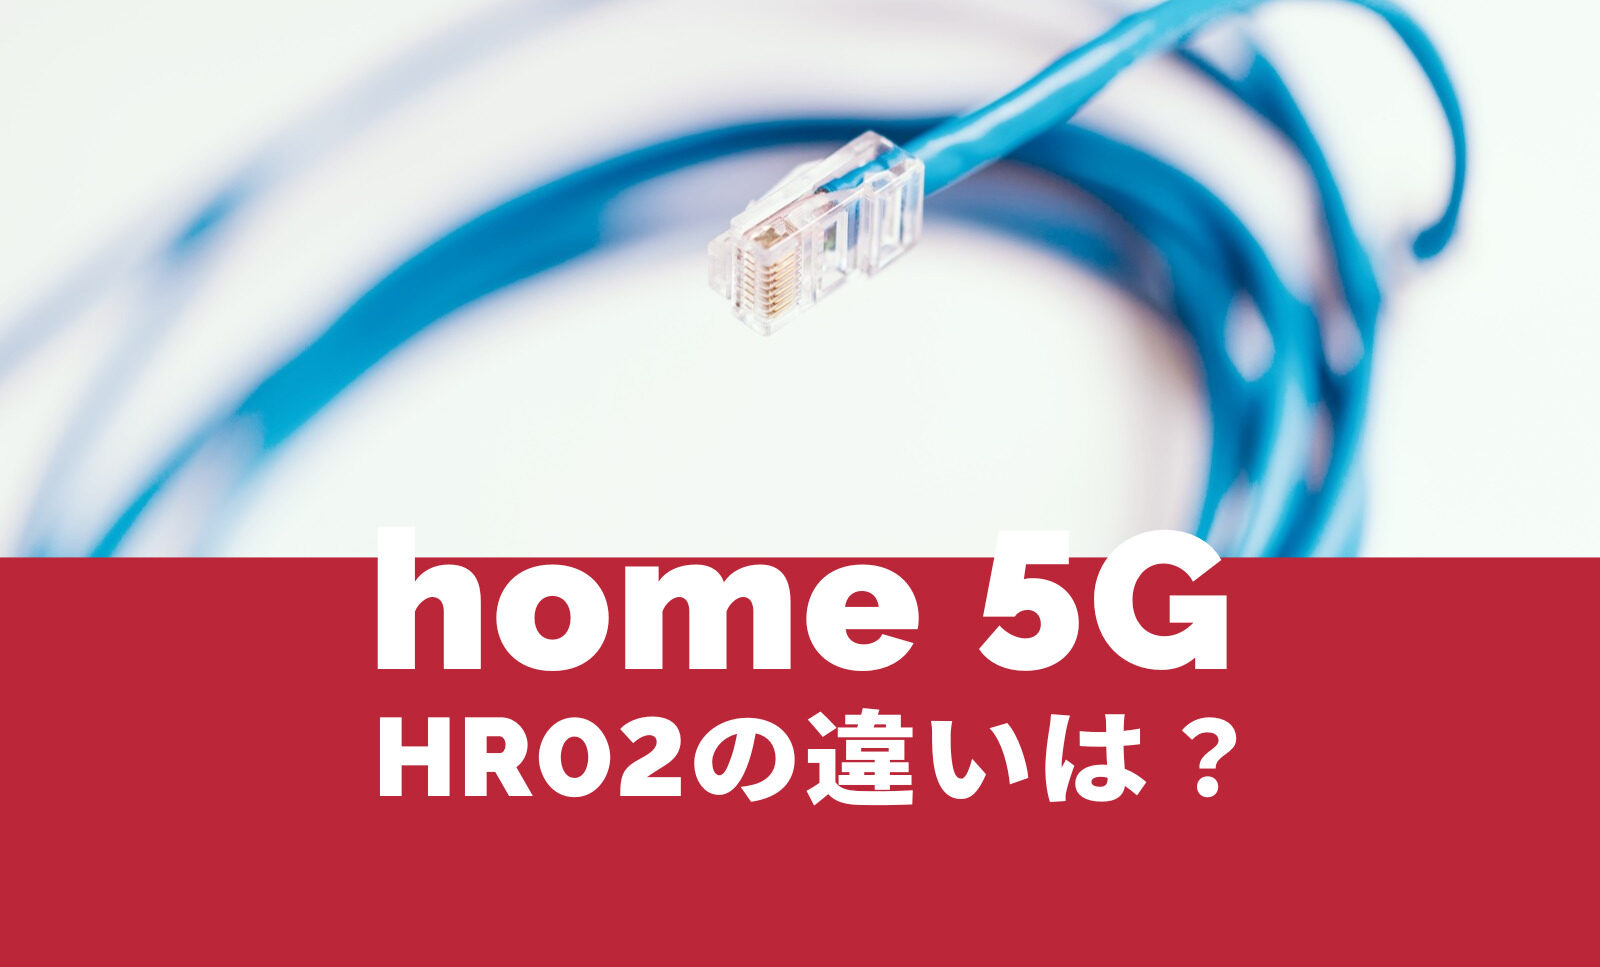 ドコモ home 5G HR02の違いは？HR01と比較して何が違う？のサムネイル画像